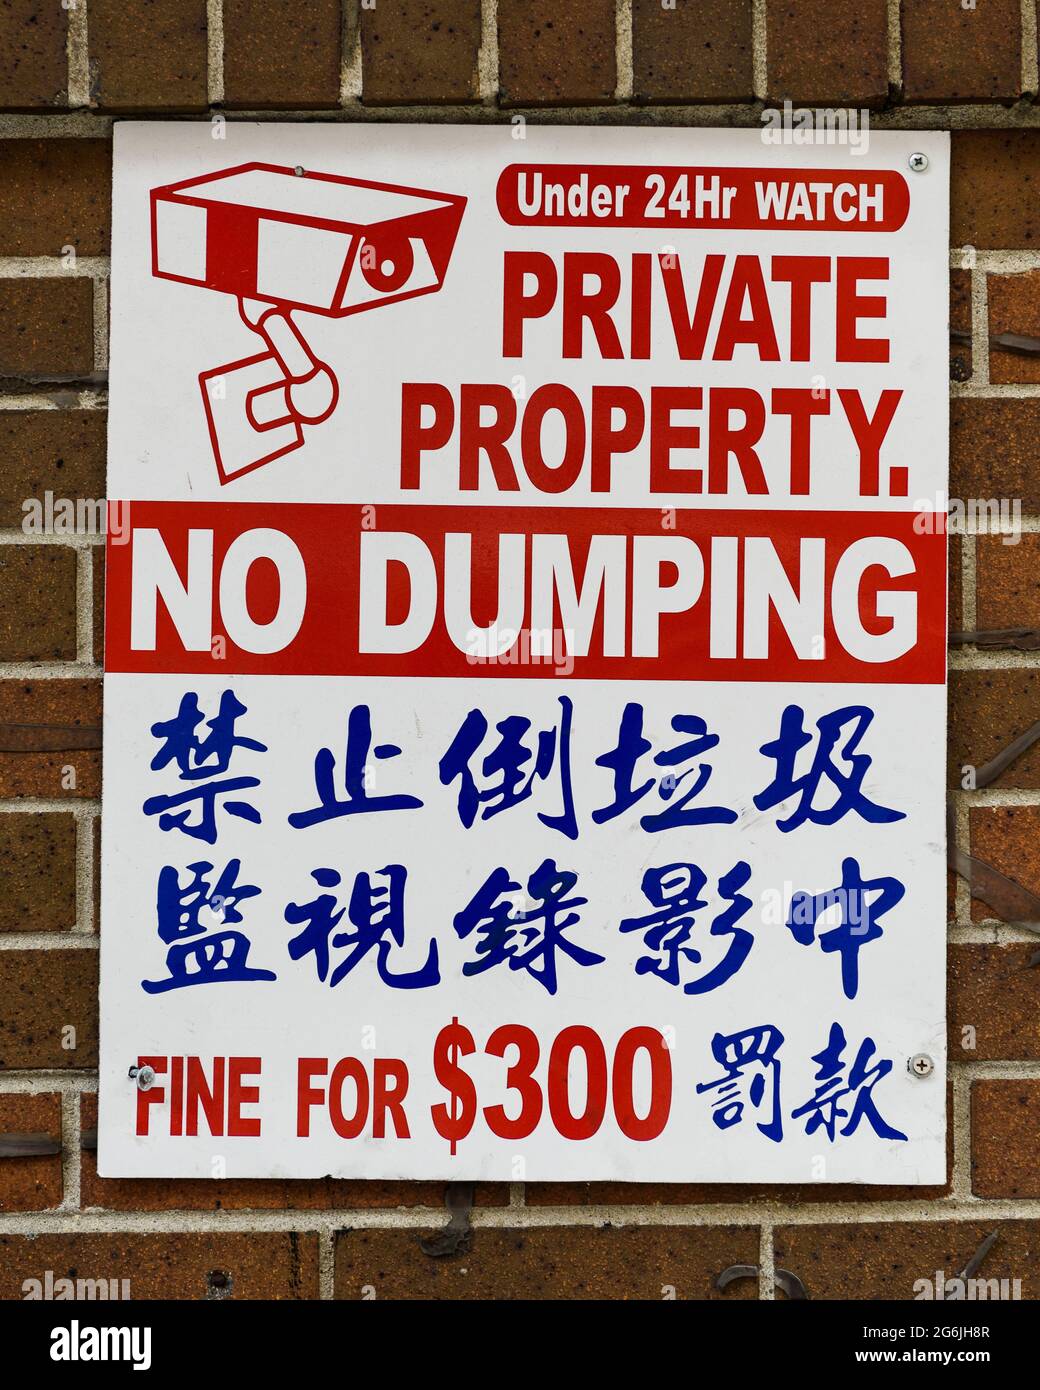 Rotes und blaues Schild in Chinatown für Privateigentum und kein Dumping, in Englisch und Chinesisch mit einer Geldstrafe für die B5300 geschrieben Stockfoto